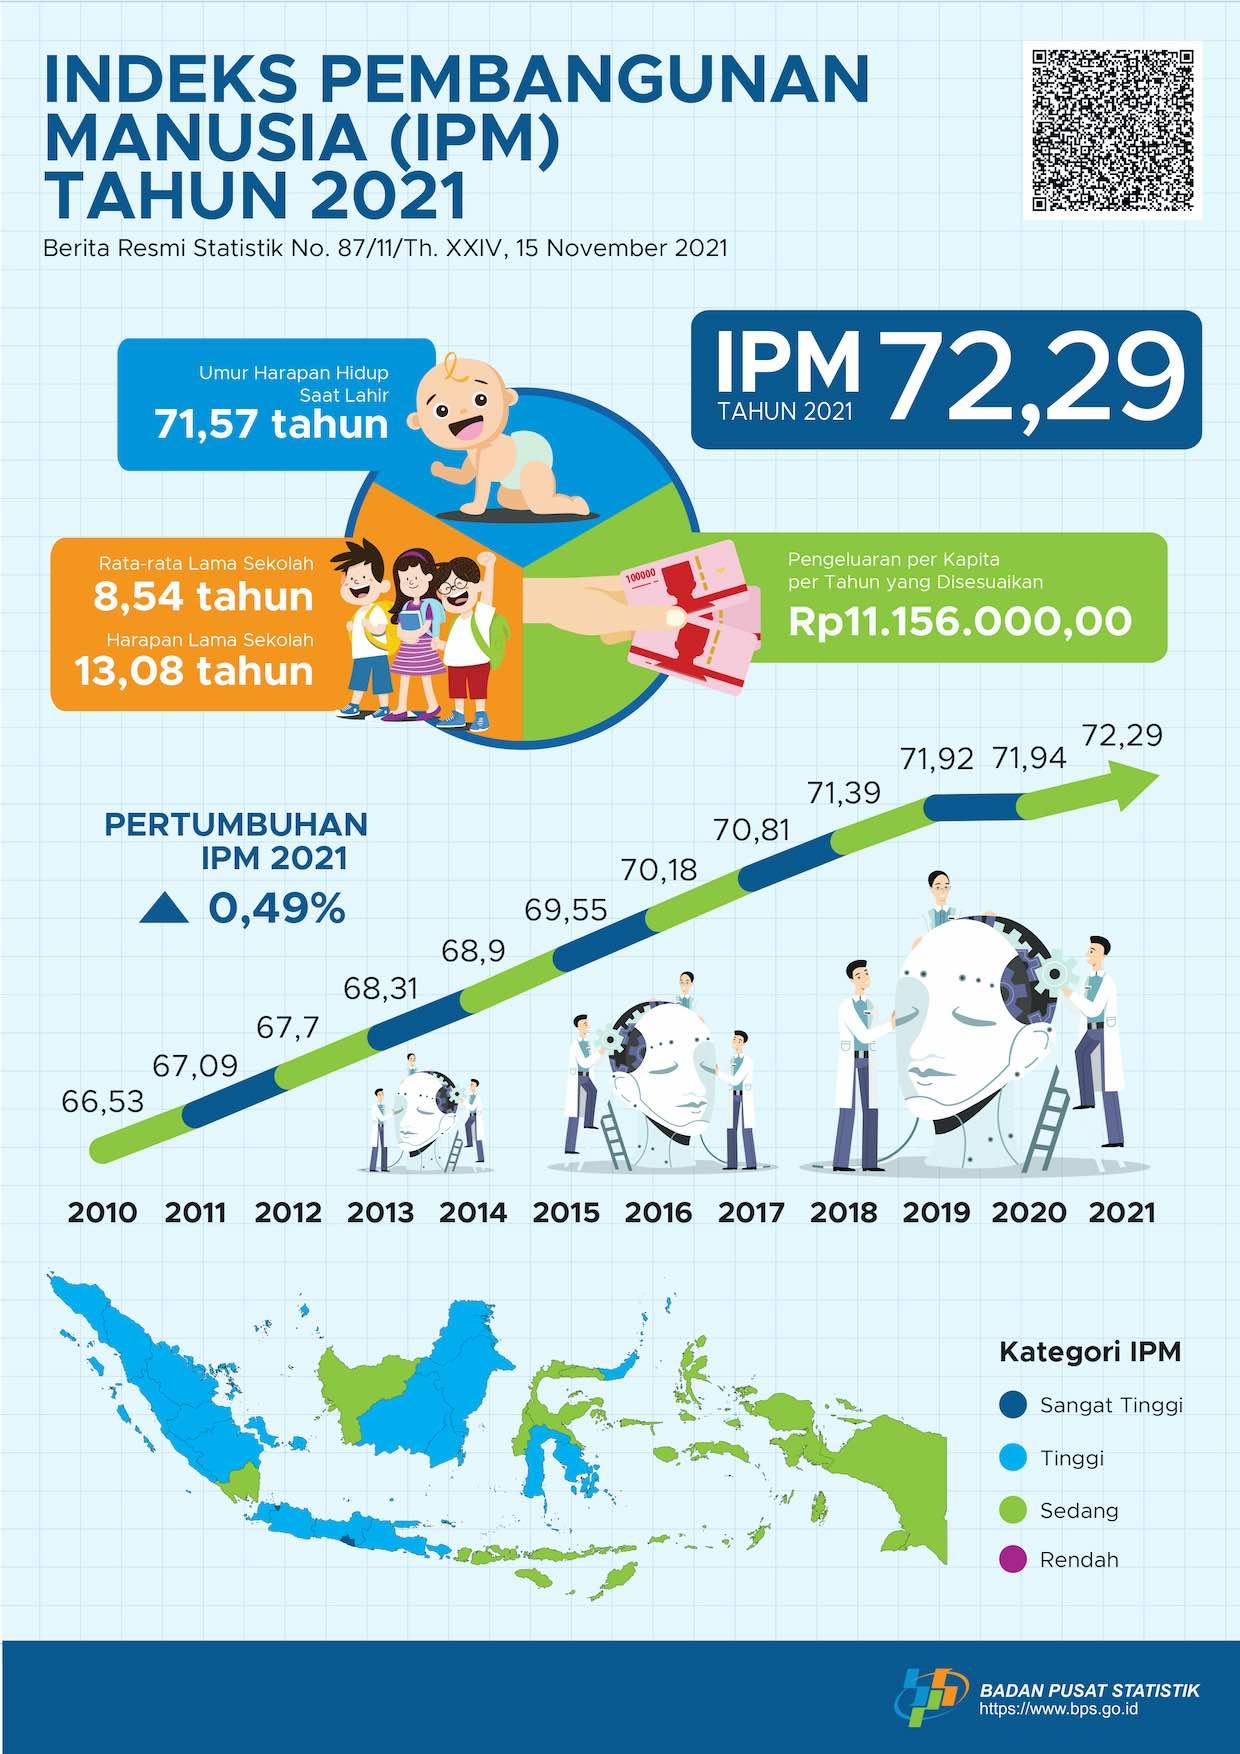 Indeks Pembangunan Manusia (IPM) Indonesia tahun 2021 mencapai 72,29, meningkat 0,35 poin (0,49 persen) dibandingkan capaian tahun sebelumnya (71,94)